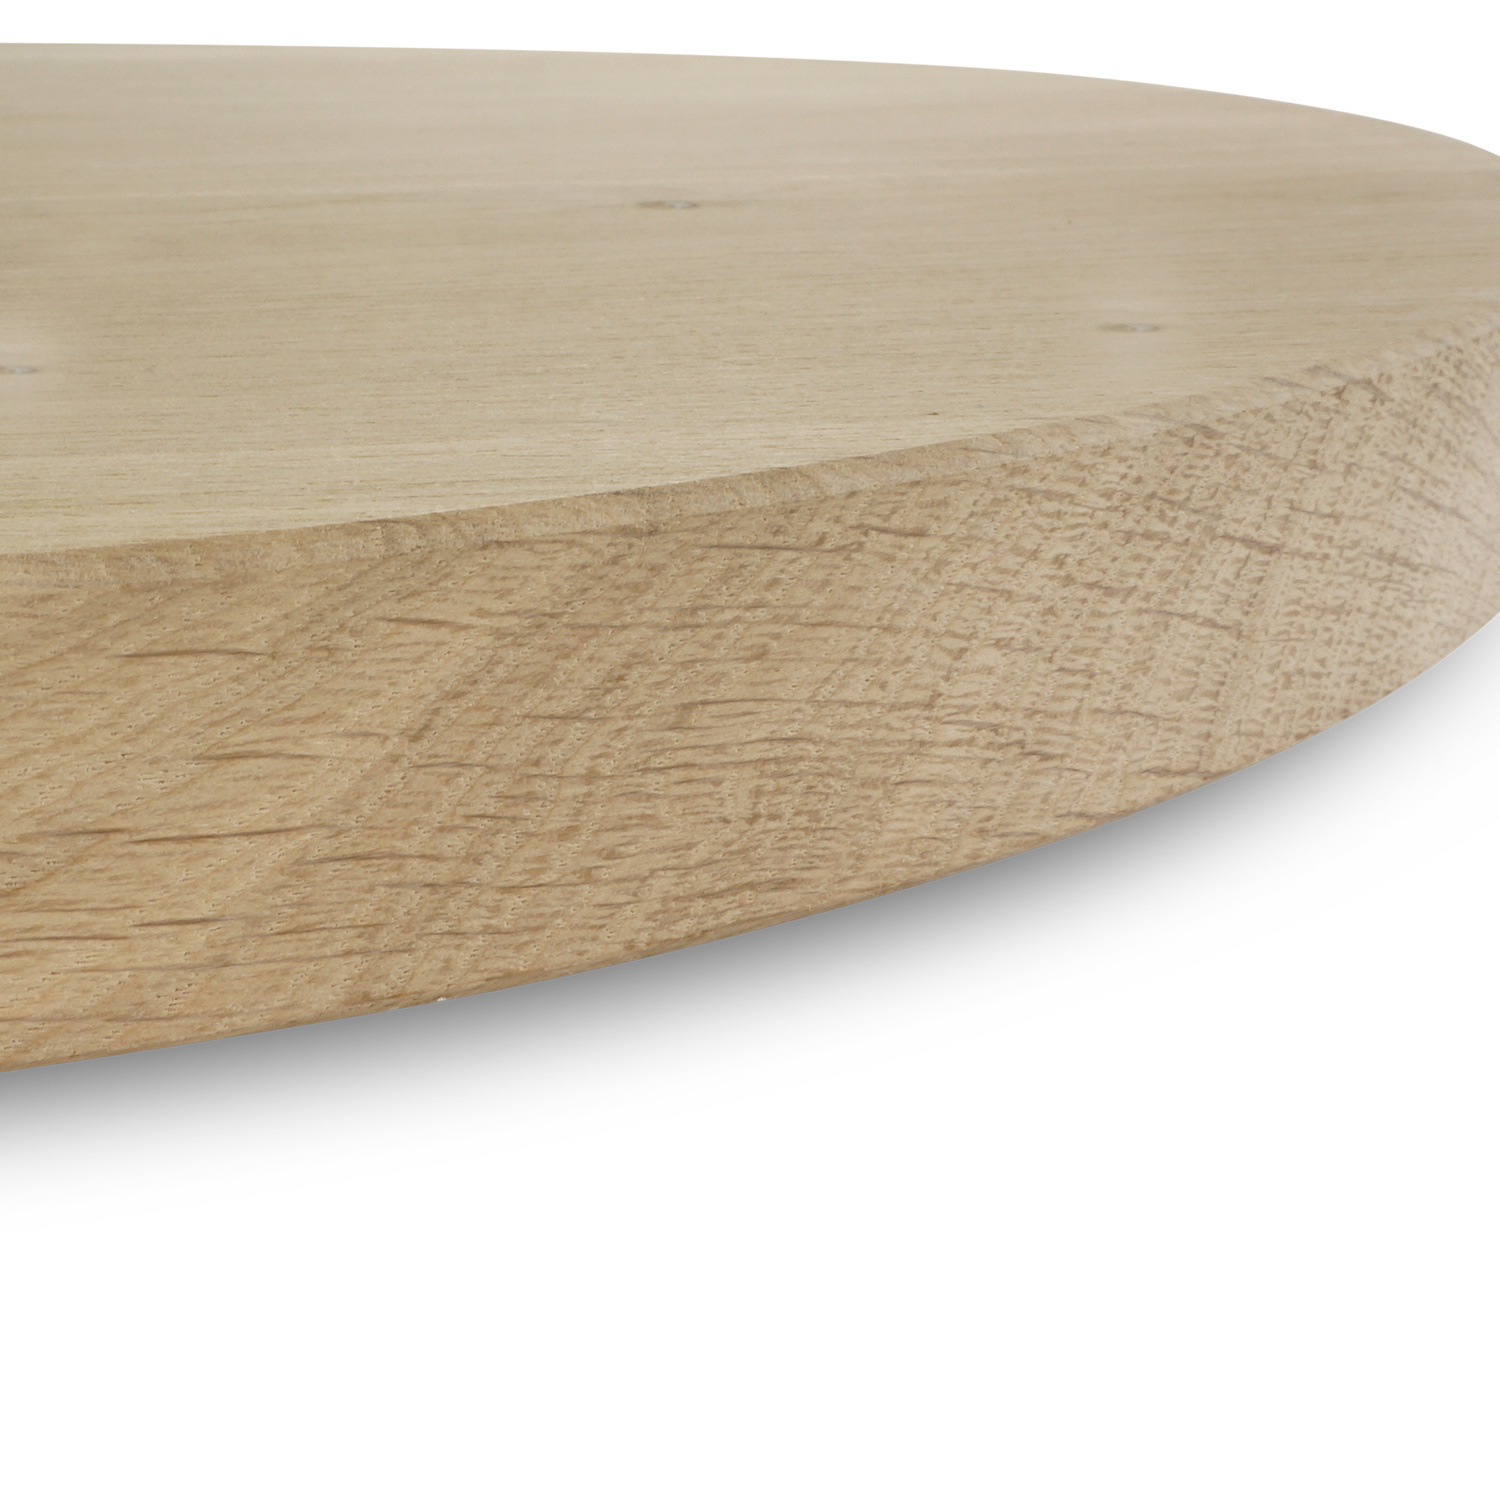  Tischplatte Eiche dänisch-oval - 4 cm dick - Eichenholz Rustikal - Bootsform Eiche Tischplatte massiv - HF 8-12%